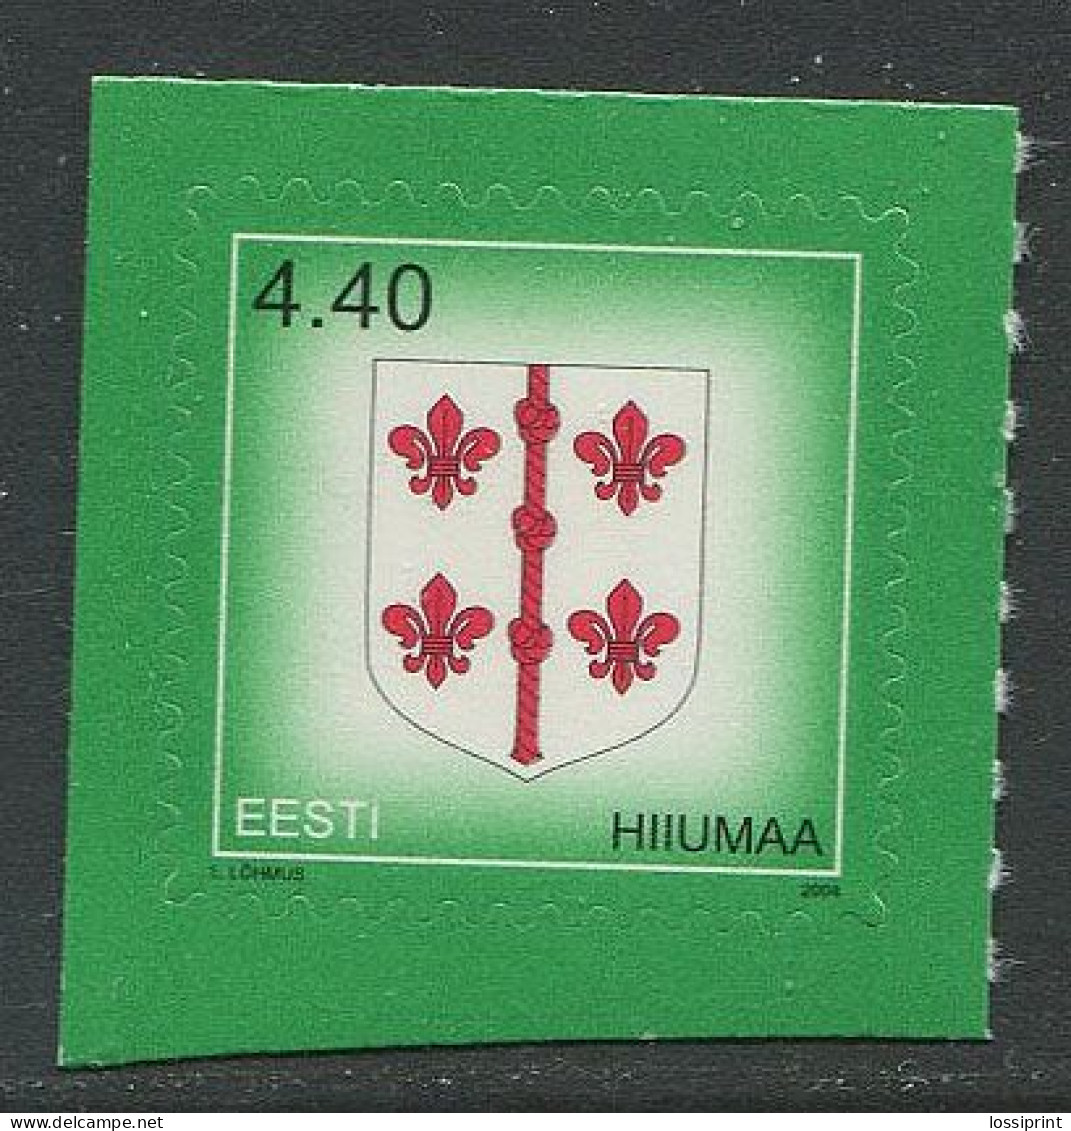 Estonia:Unused Stamp Hiiumaa Coat Of Arm, 2004, MNH - Estonie